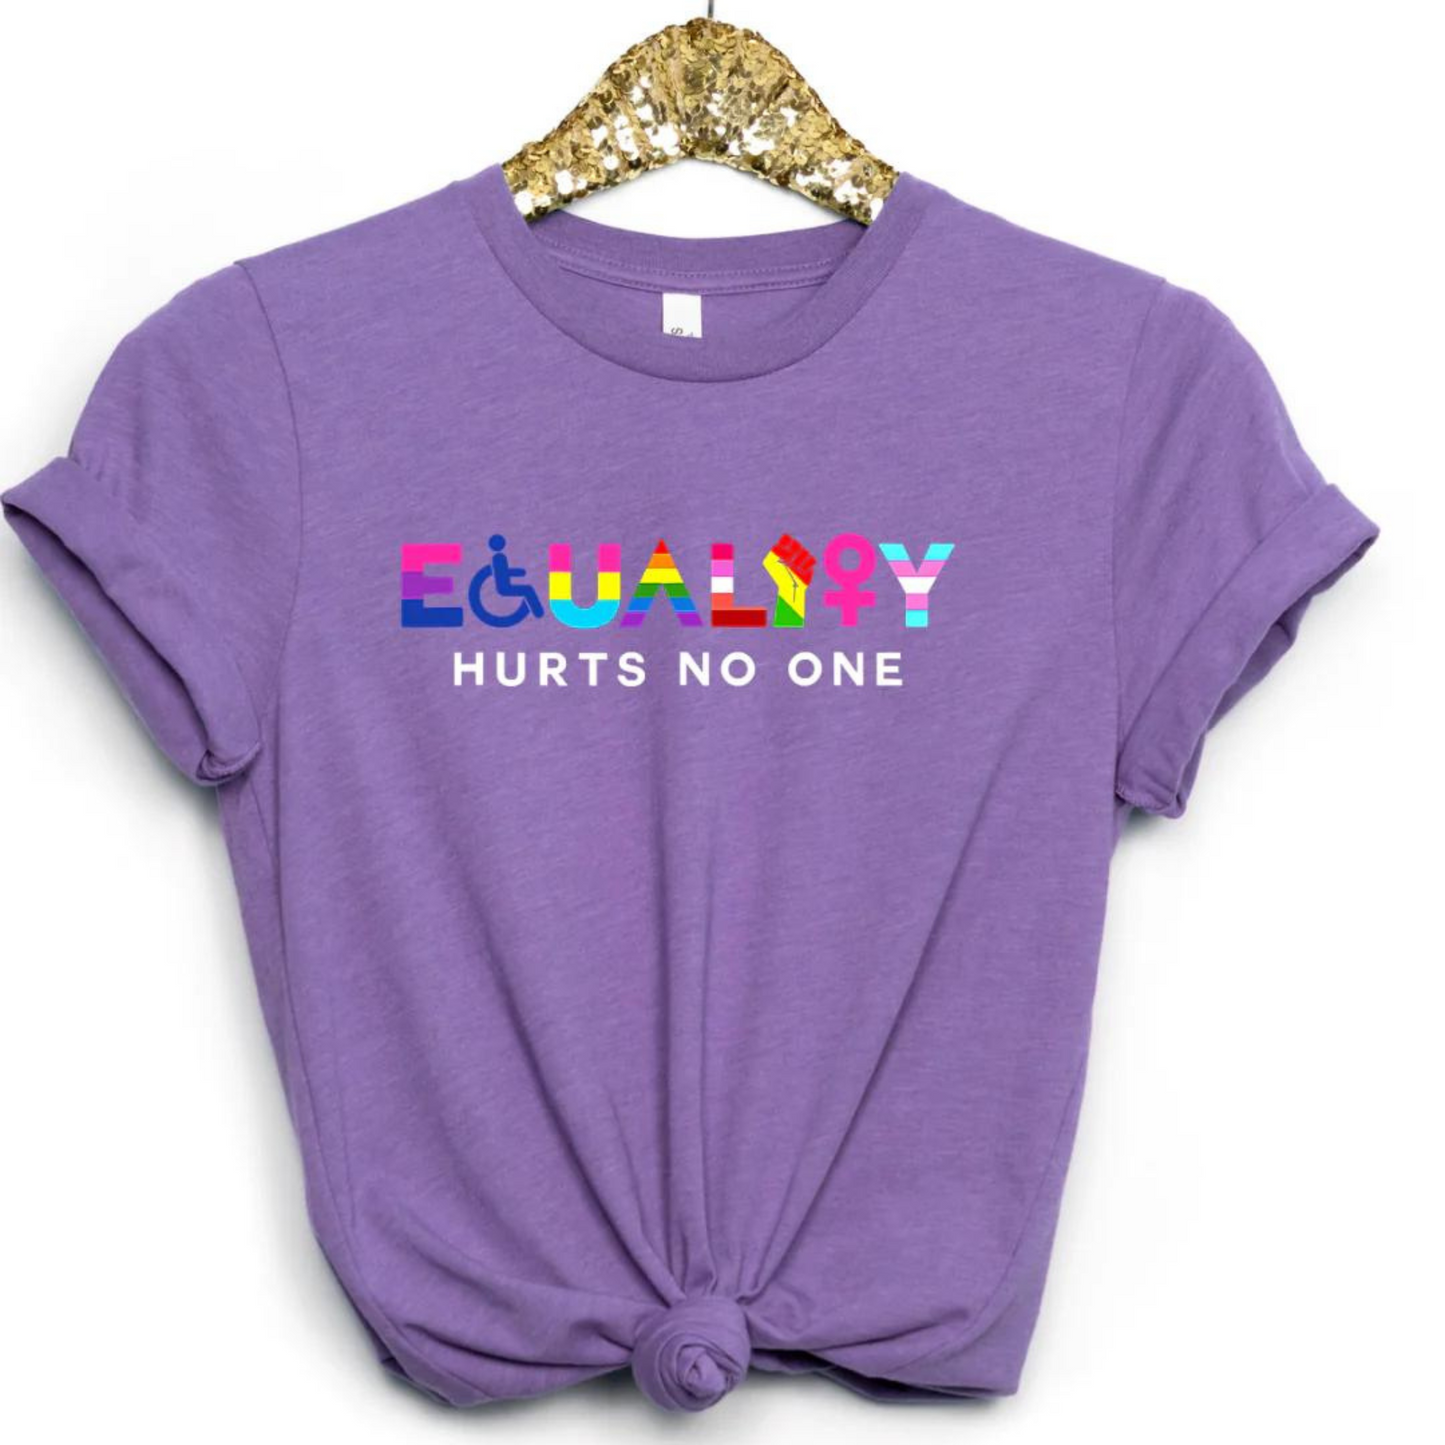 Equality Hurts No One T-shirt LGBTQ Ally Rainbow Pride Shirt